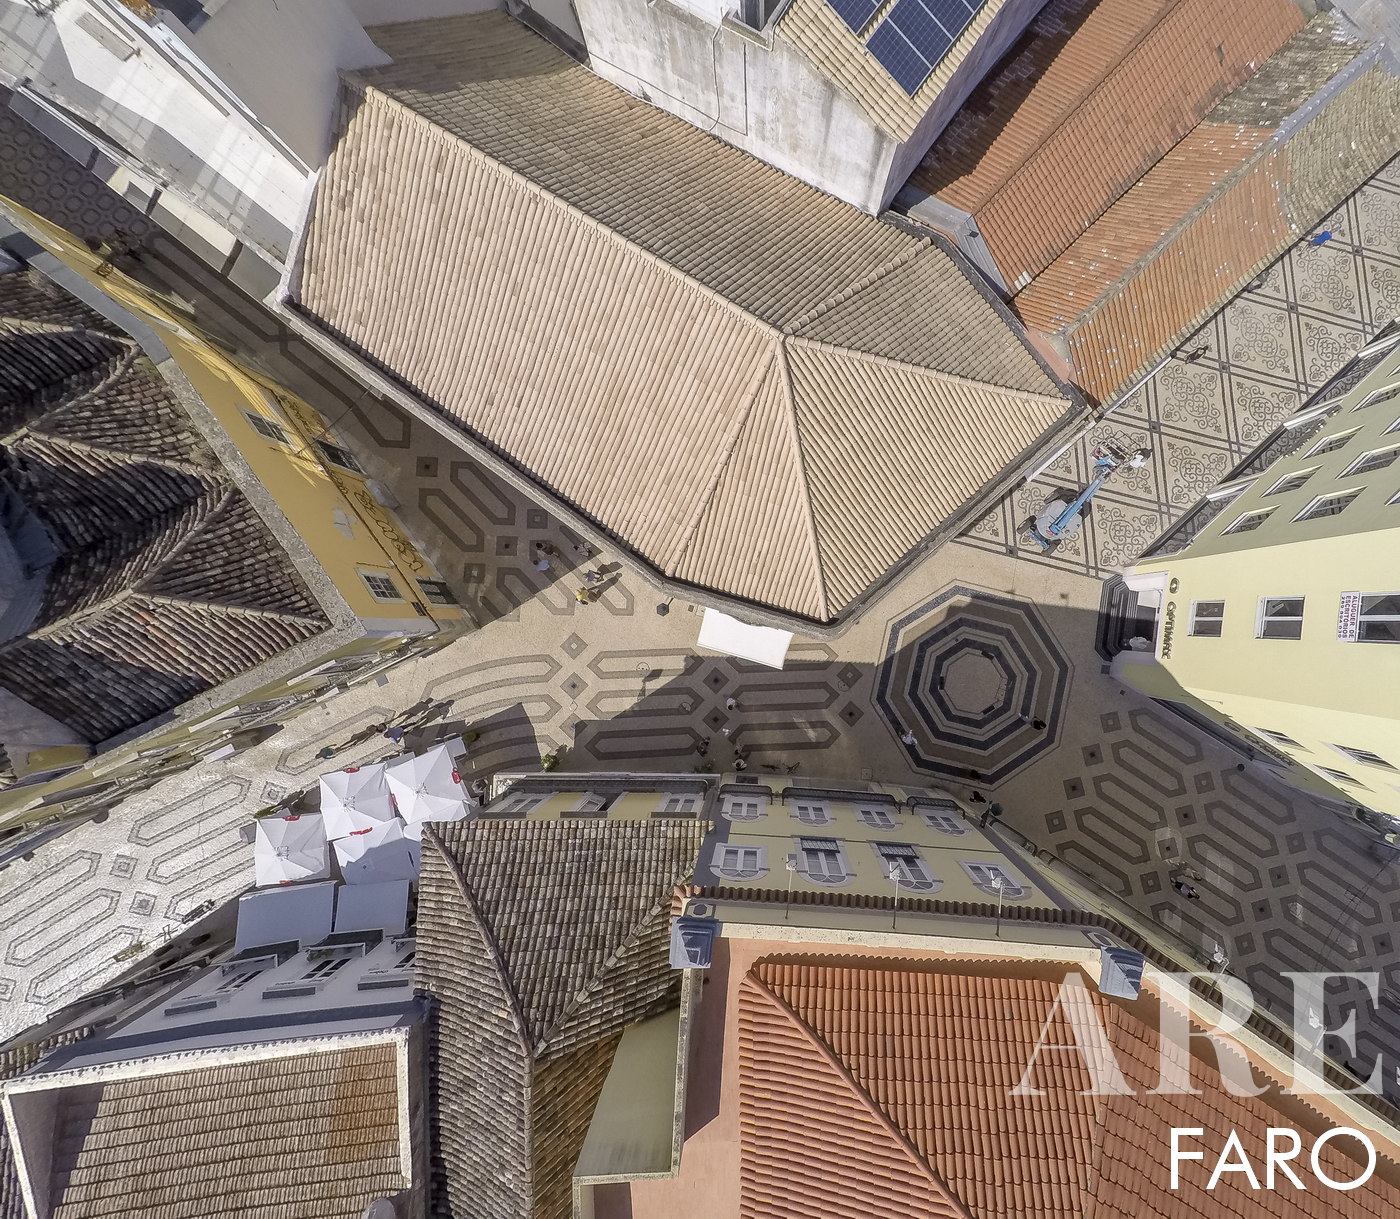 Vista da tradicional calçada portuguesa na rua comercial. Um ponto importante no comércio da região de Faro